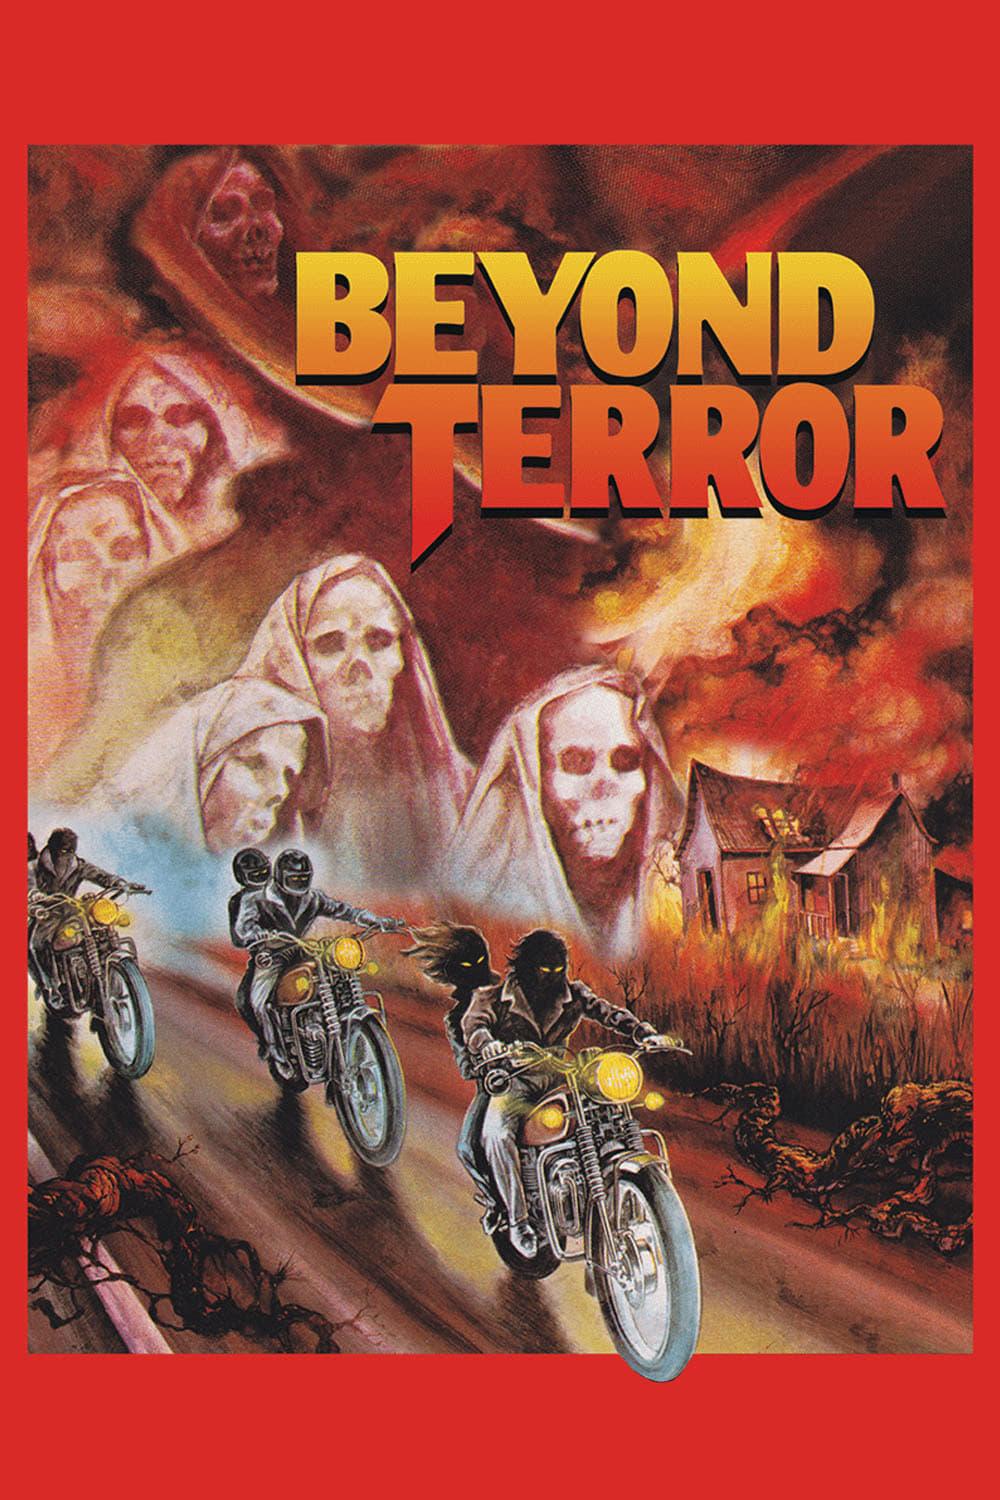 Beyond Terror poster